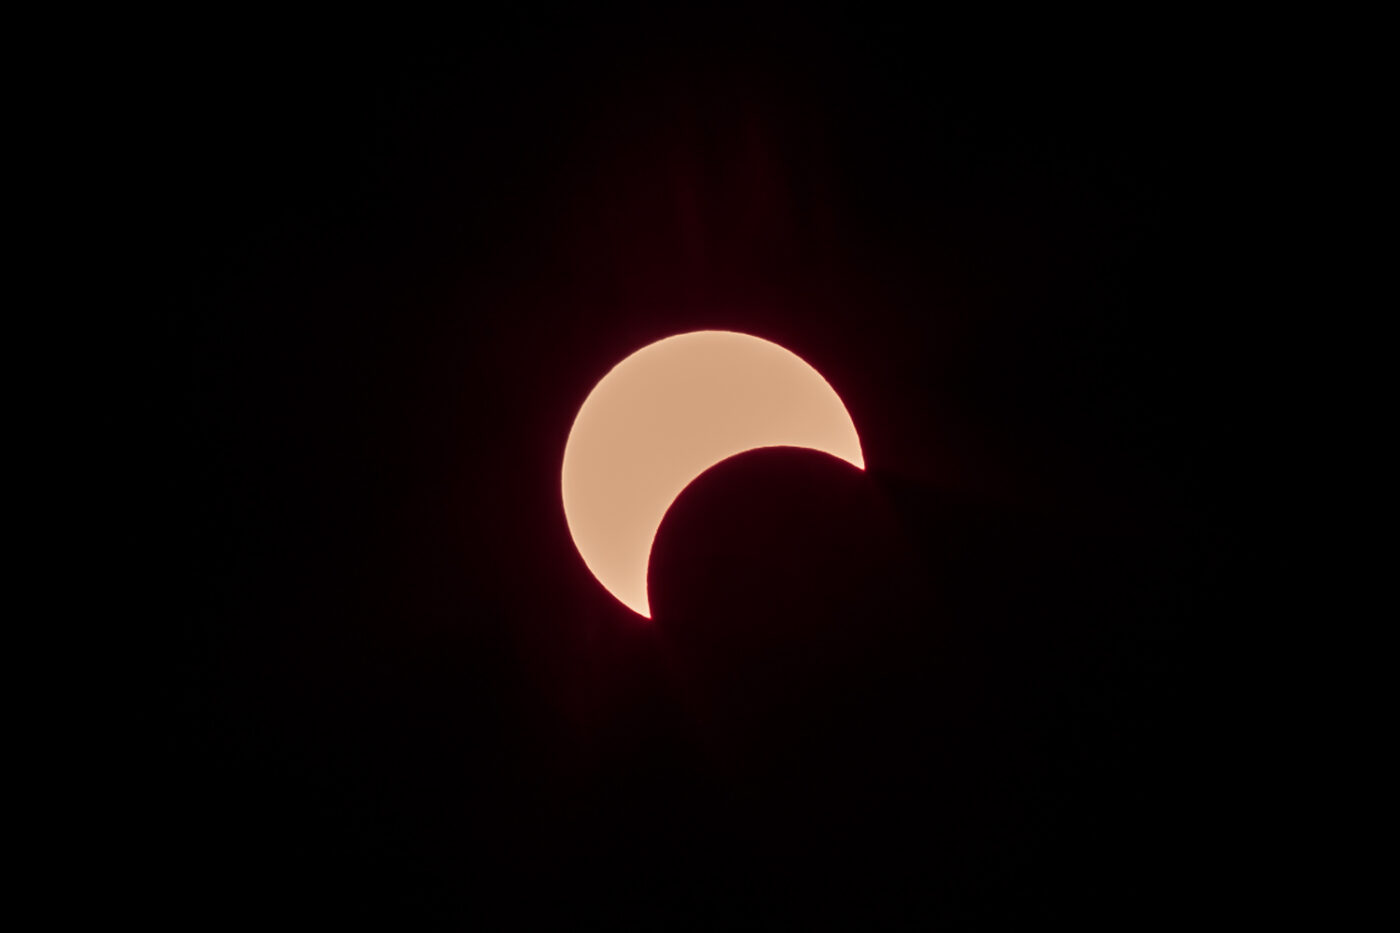 Annular solar eclipse January 15, 2010